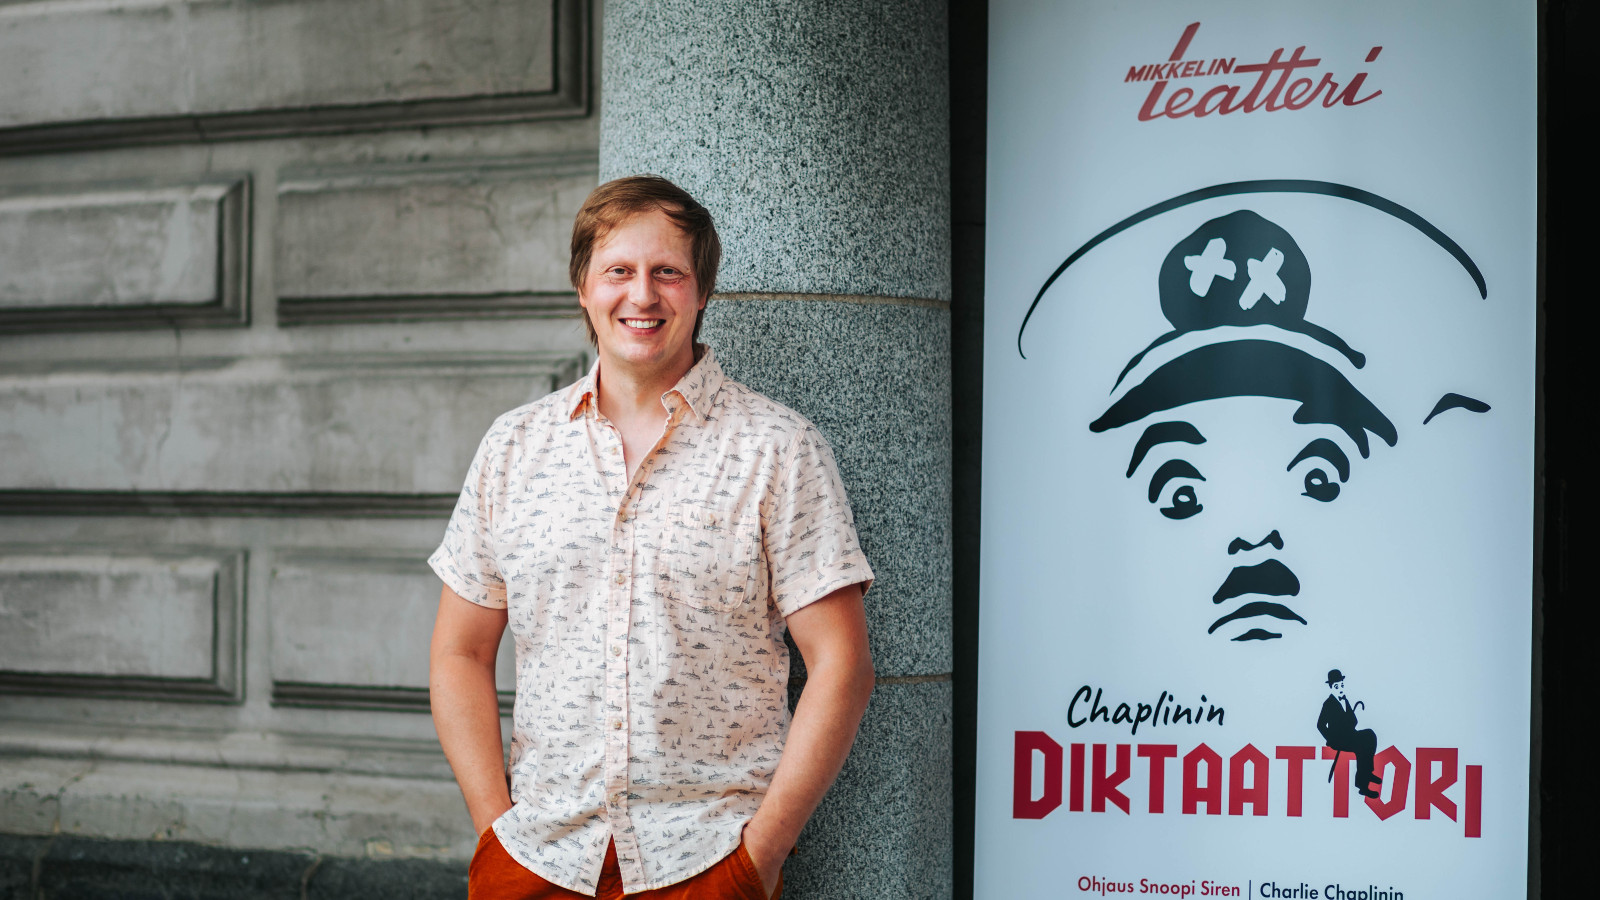 Kuvassa on Juha Pulli, joka nojaa isotiiliseen Mikkelin teatterin seinään.  Oikealla puolella on Diktaattorin juliste, joka on musta-valkoinen ja siinä on hitlermäinen graafinen kasvokuva sekä näytelmän nimi.